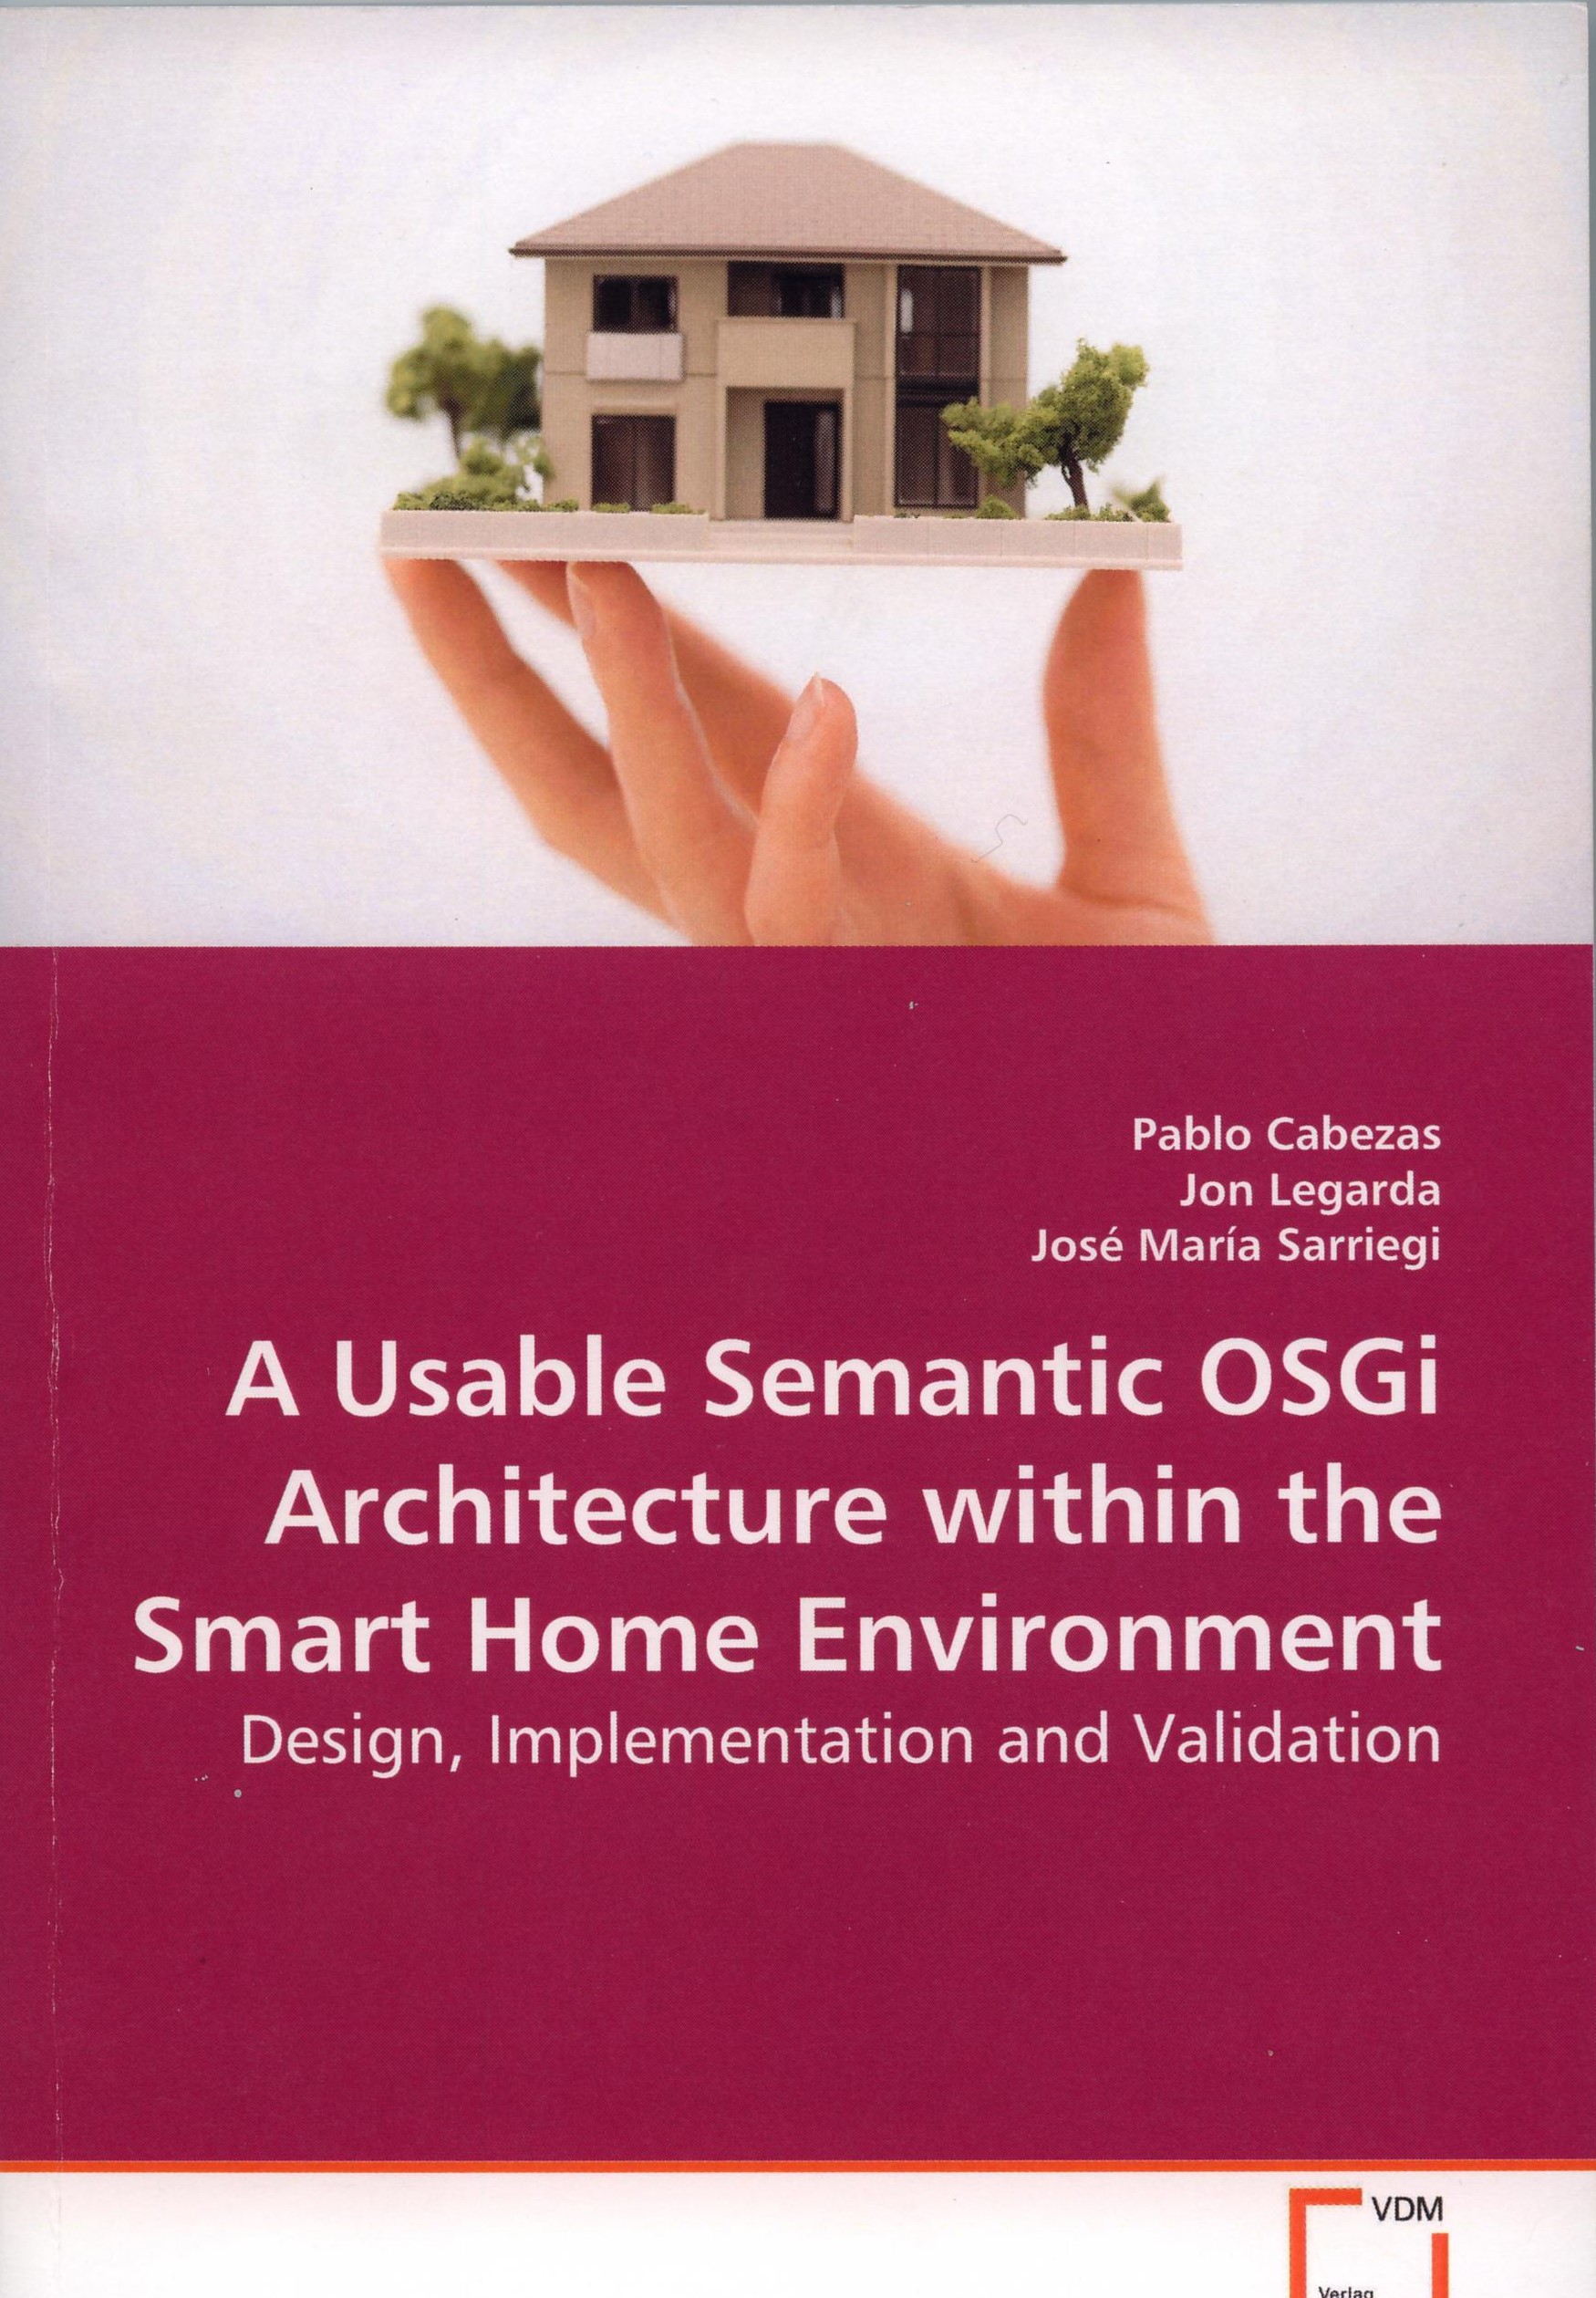 Imagen de portada del libro A Usable Semantic OSGi Architecture within the Smart Home Environment